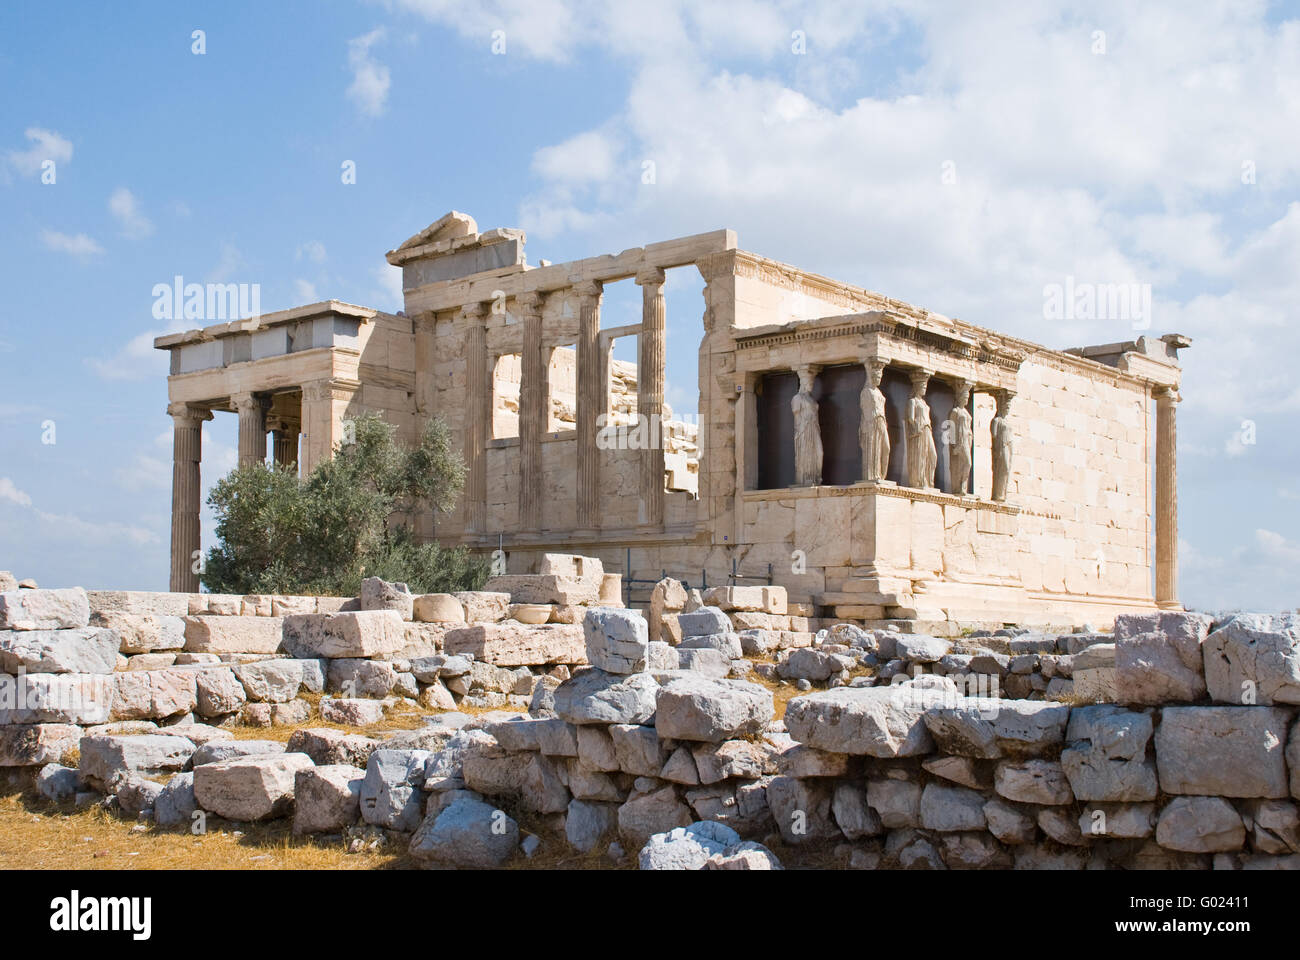 Erechtheion temple on acropolis, Athens, Greece Stock Photo